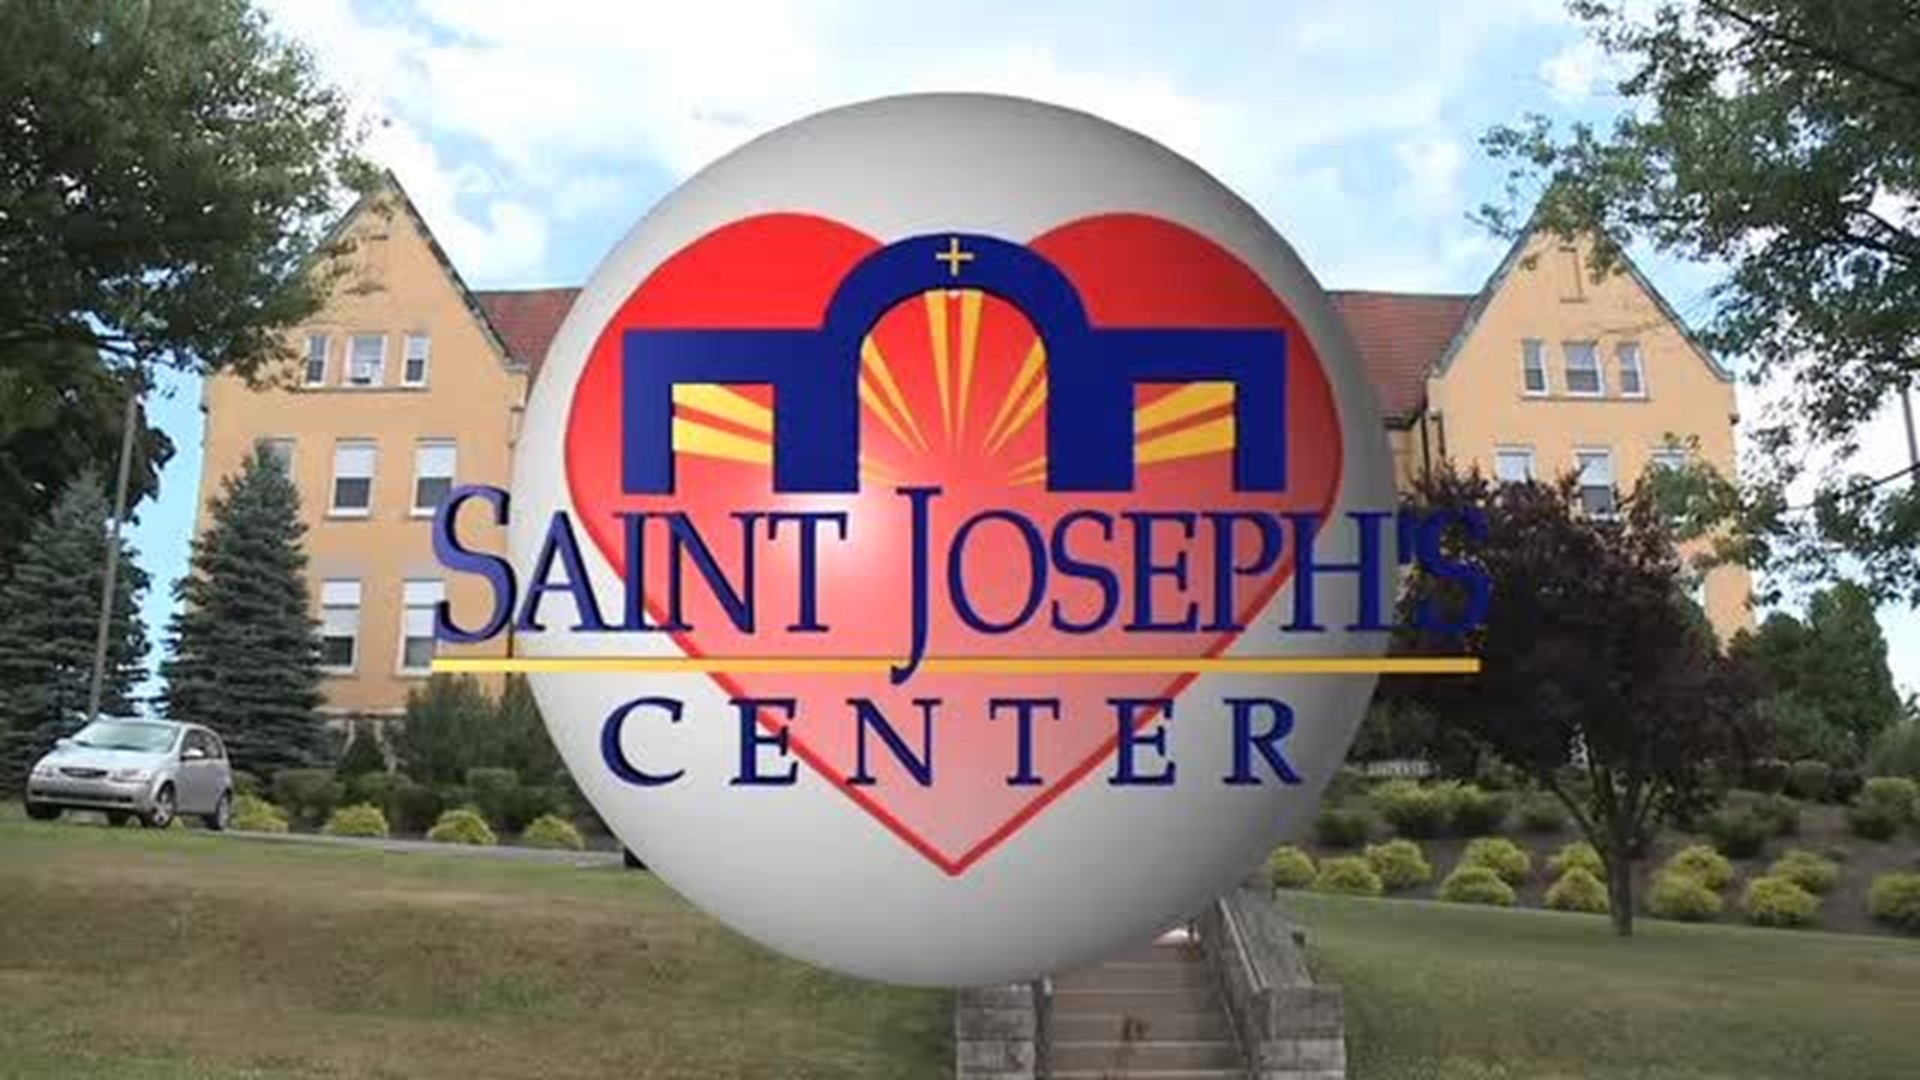 St. Joseph's Center